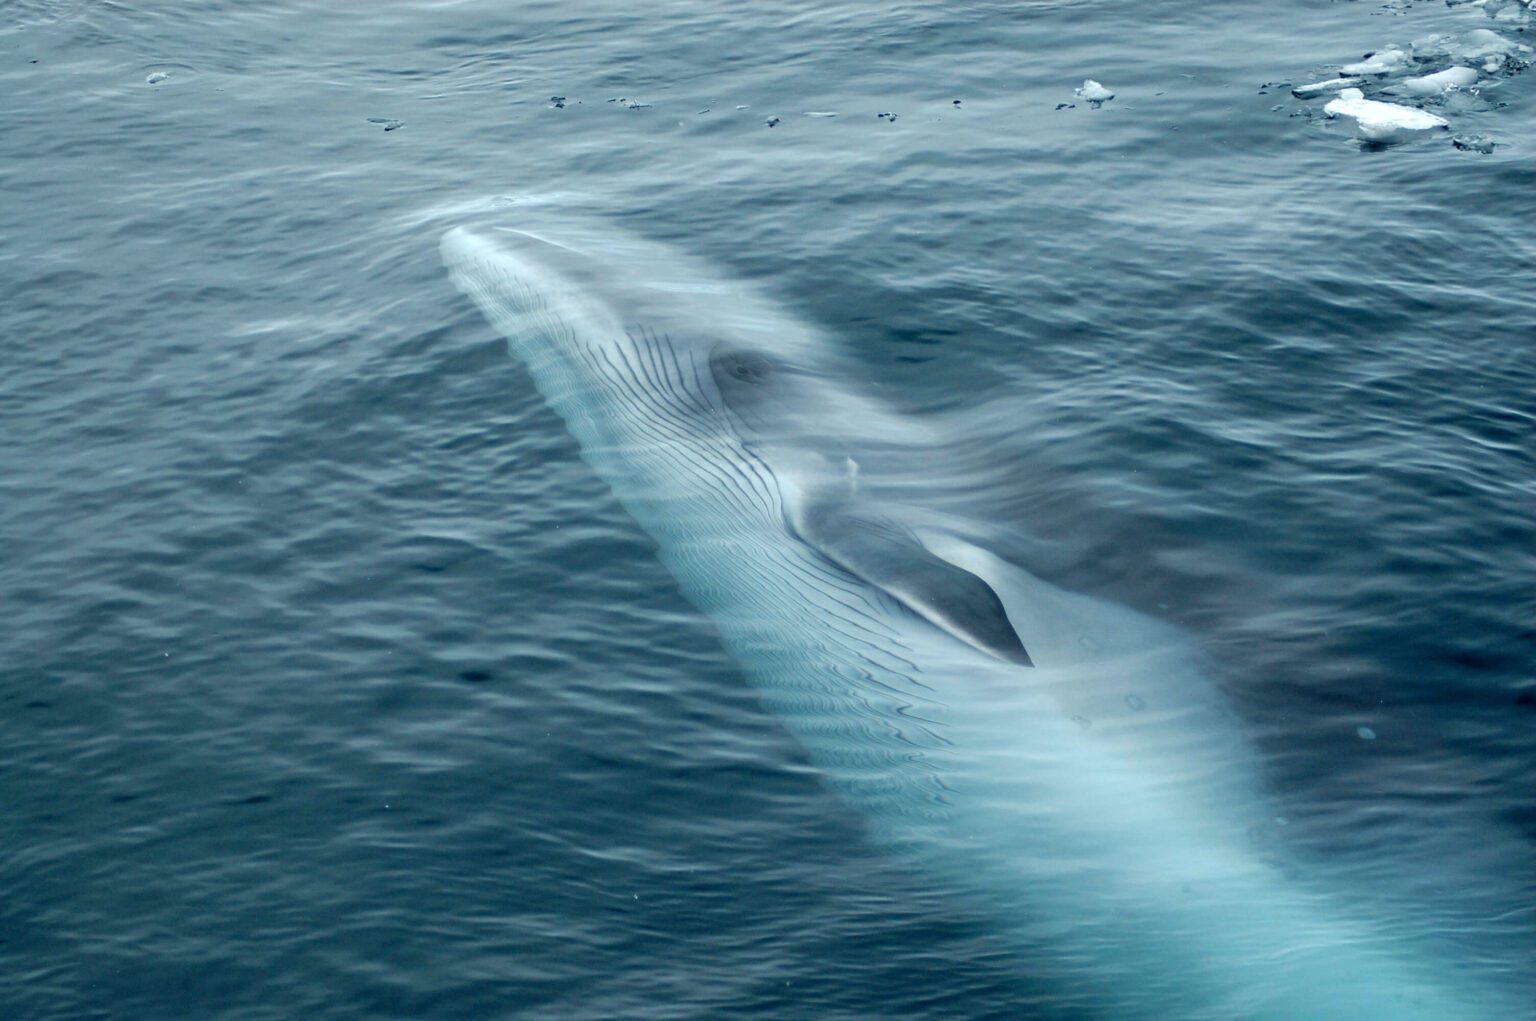 South Atlantic whale sanctuary